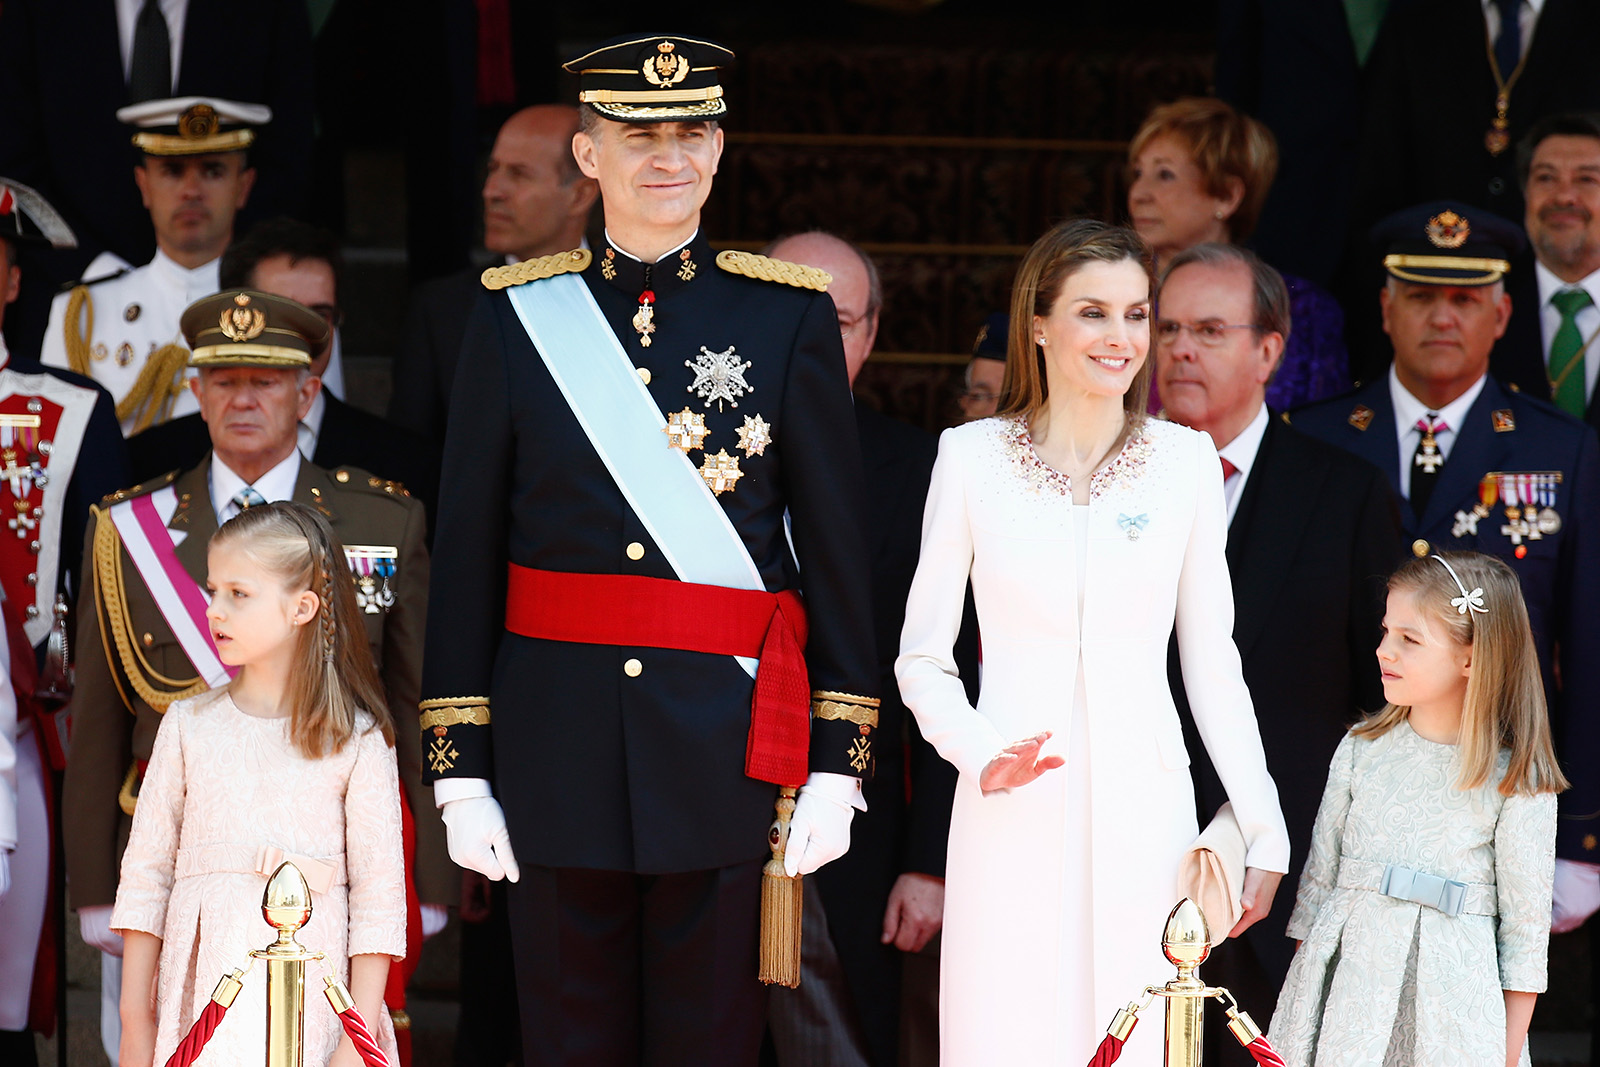 Король Іспанії Філіп VI та королева Іспанії Летиція з дочками Леонор та Софією. Іспанська монархія – наймолодша із сучасних. Фото: Andreas Rentz/Getty Images